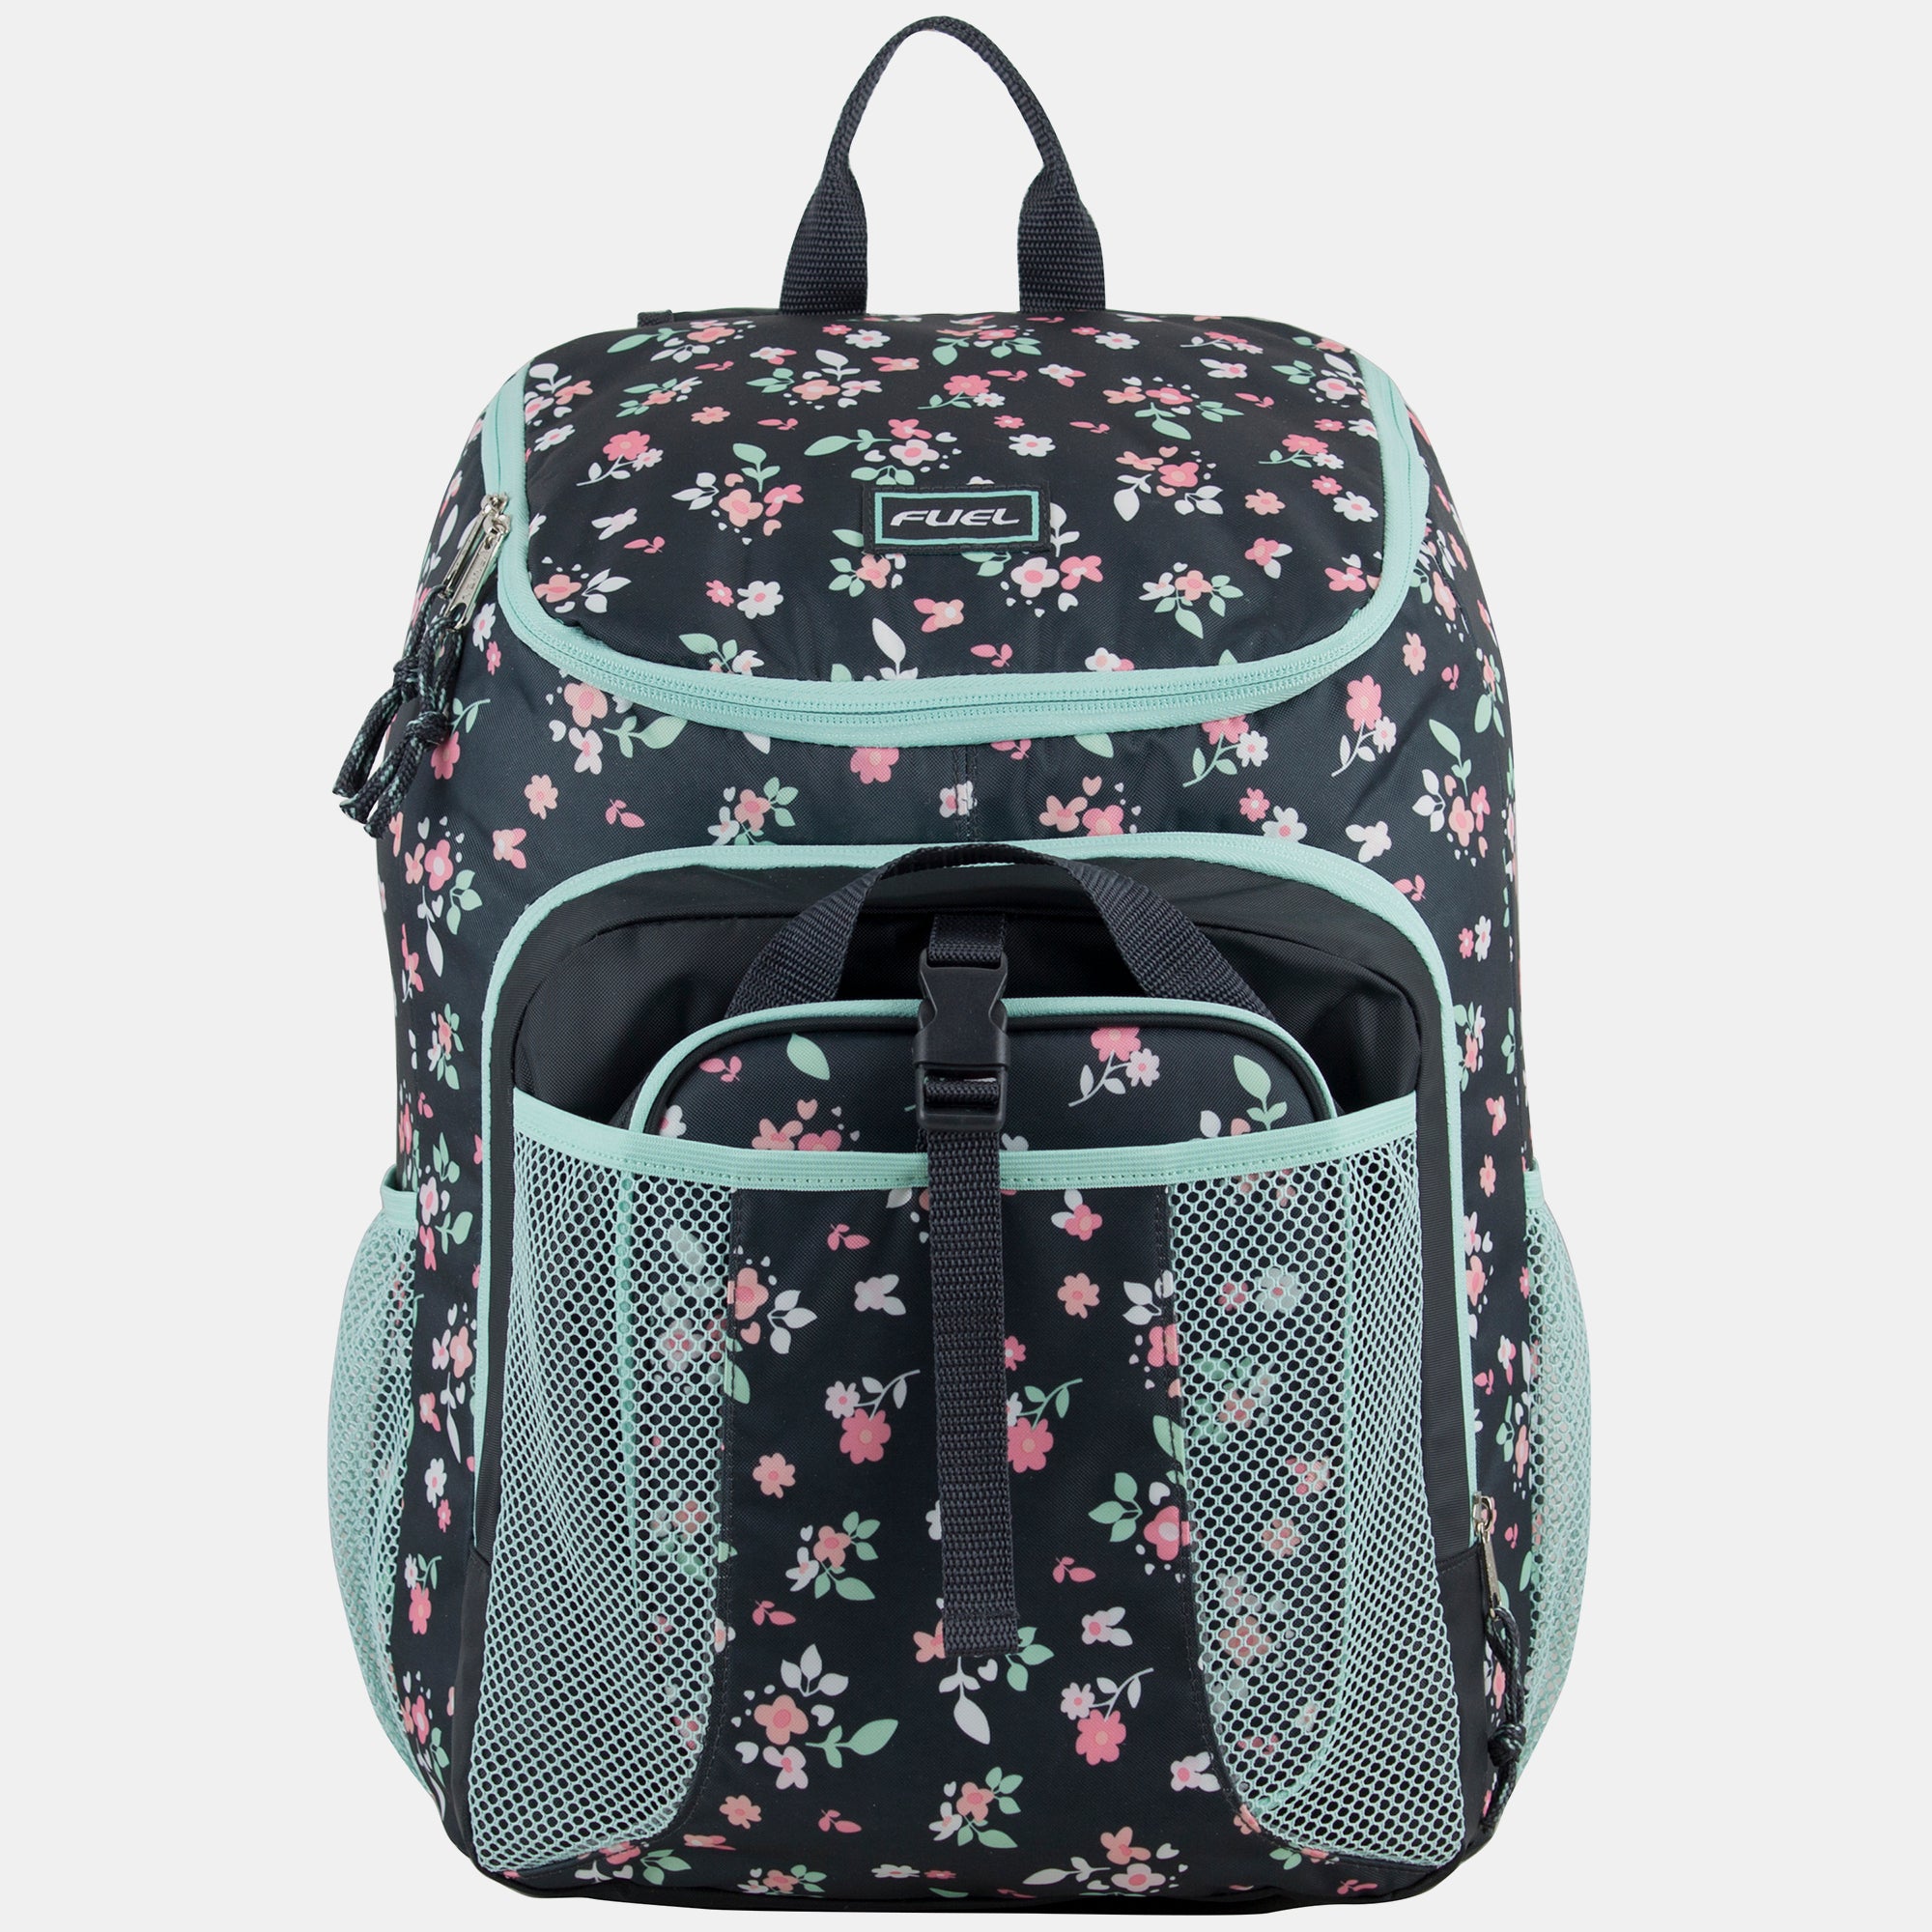 Fuel Top Loader Backpack & Lunch Bag Bundle, Graphite Camo